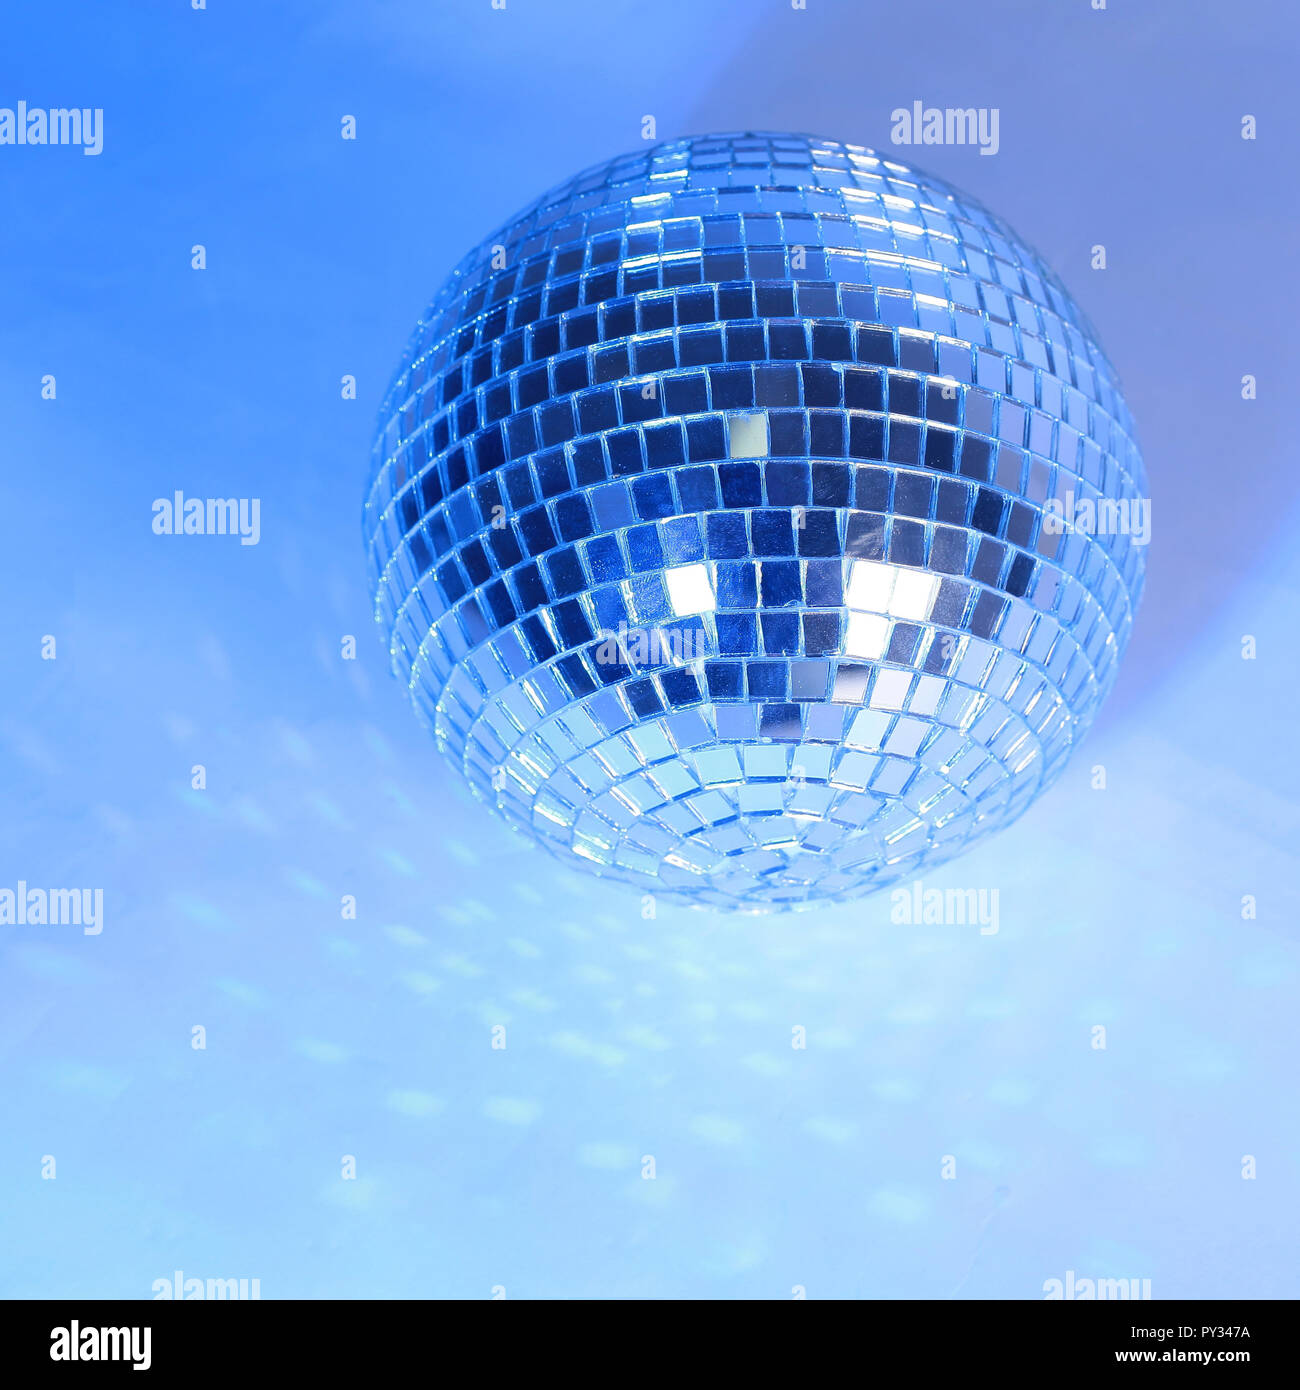 Schöne Disco Kugel auf gelben Hintergrund Stockfotografie - Alamy